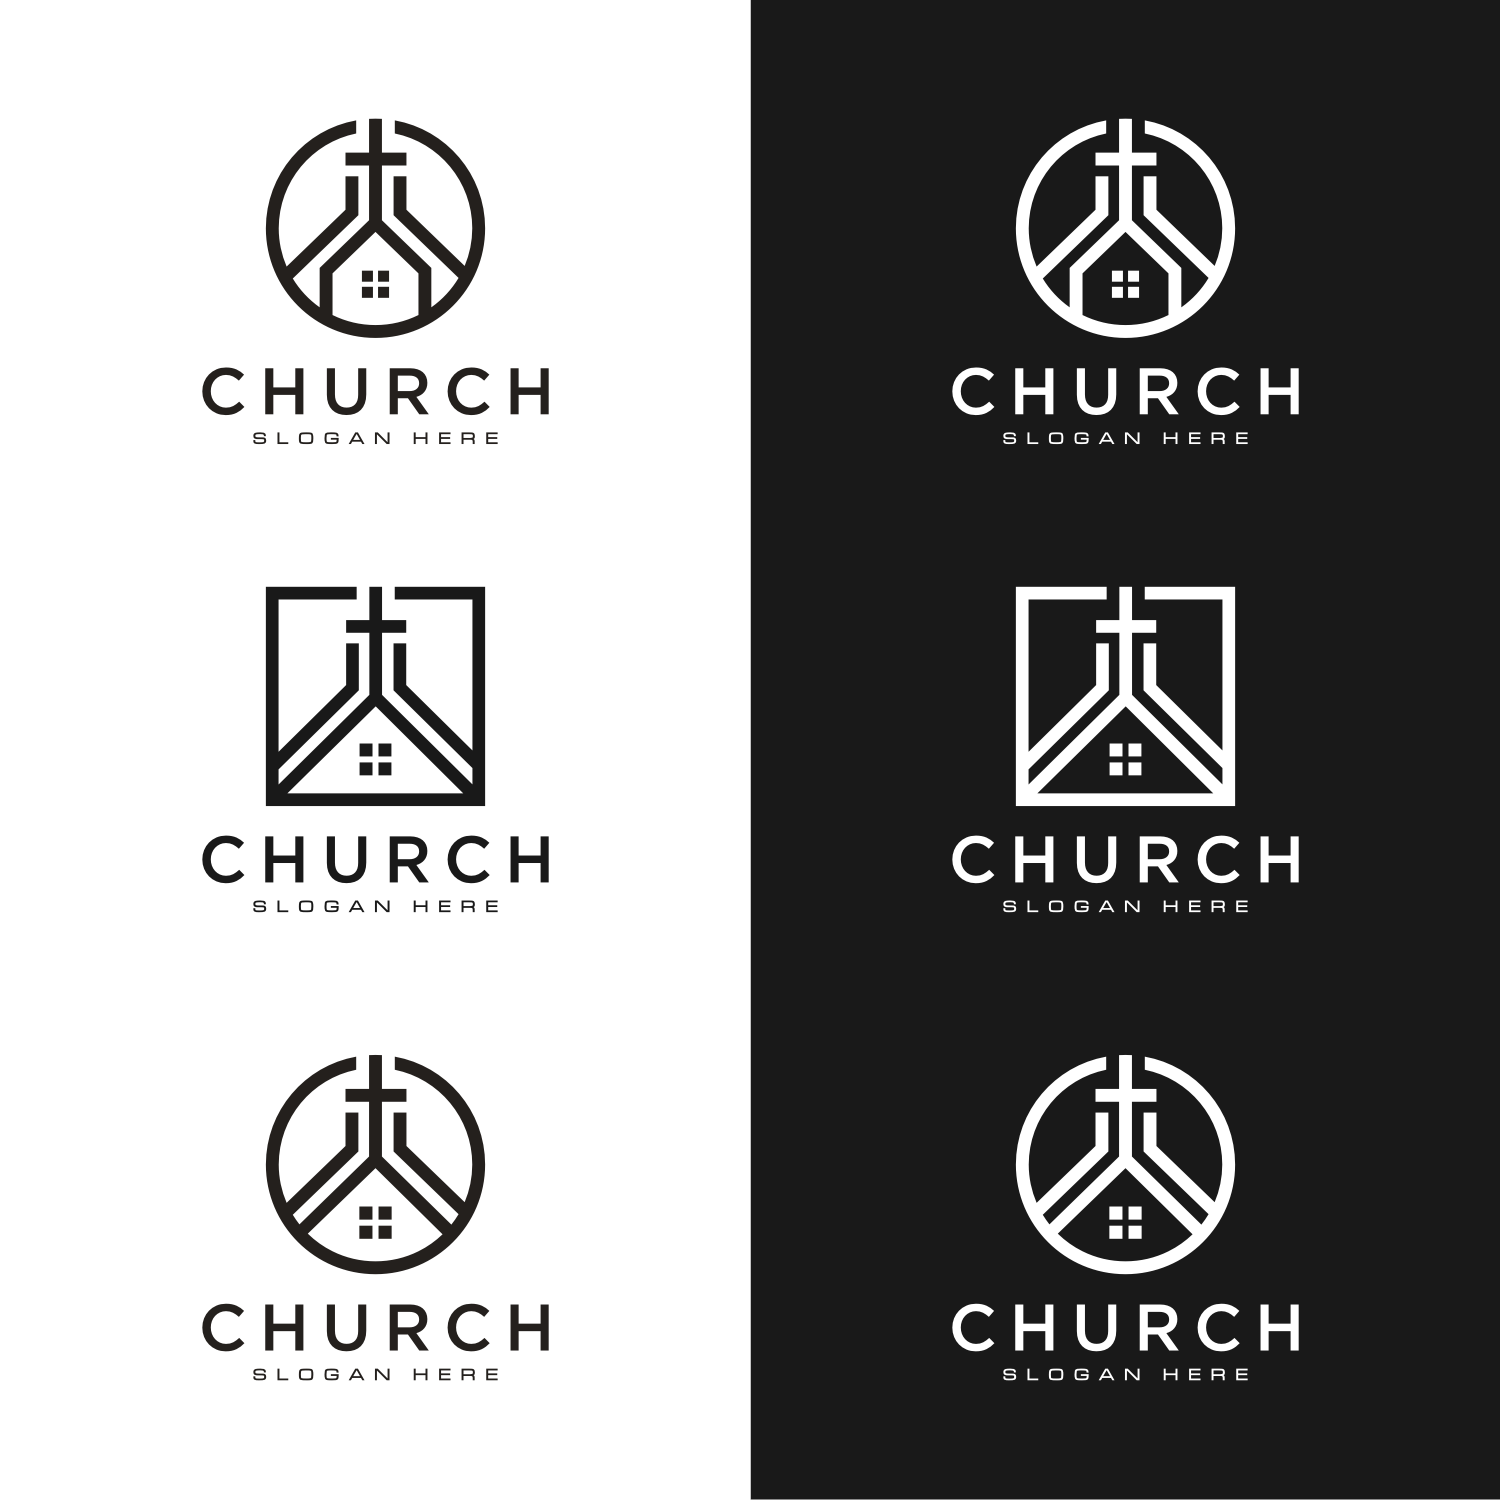 Church Home Logo Design Vector, 3 Logo cover logo.